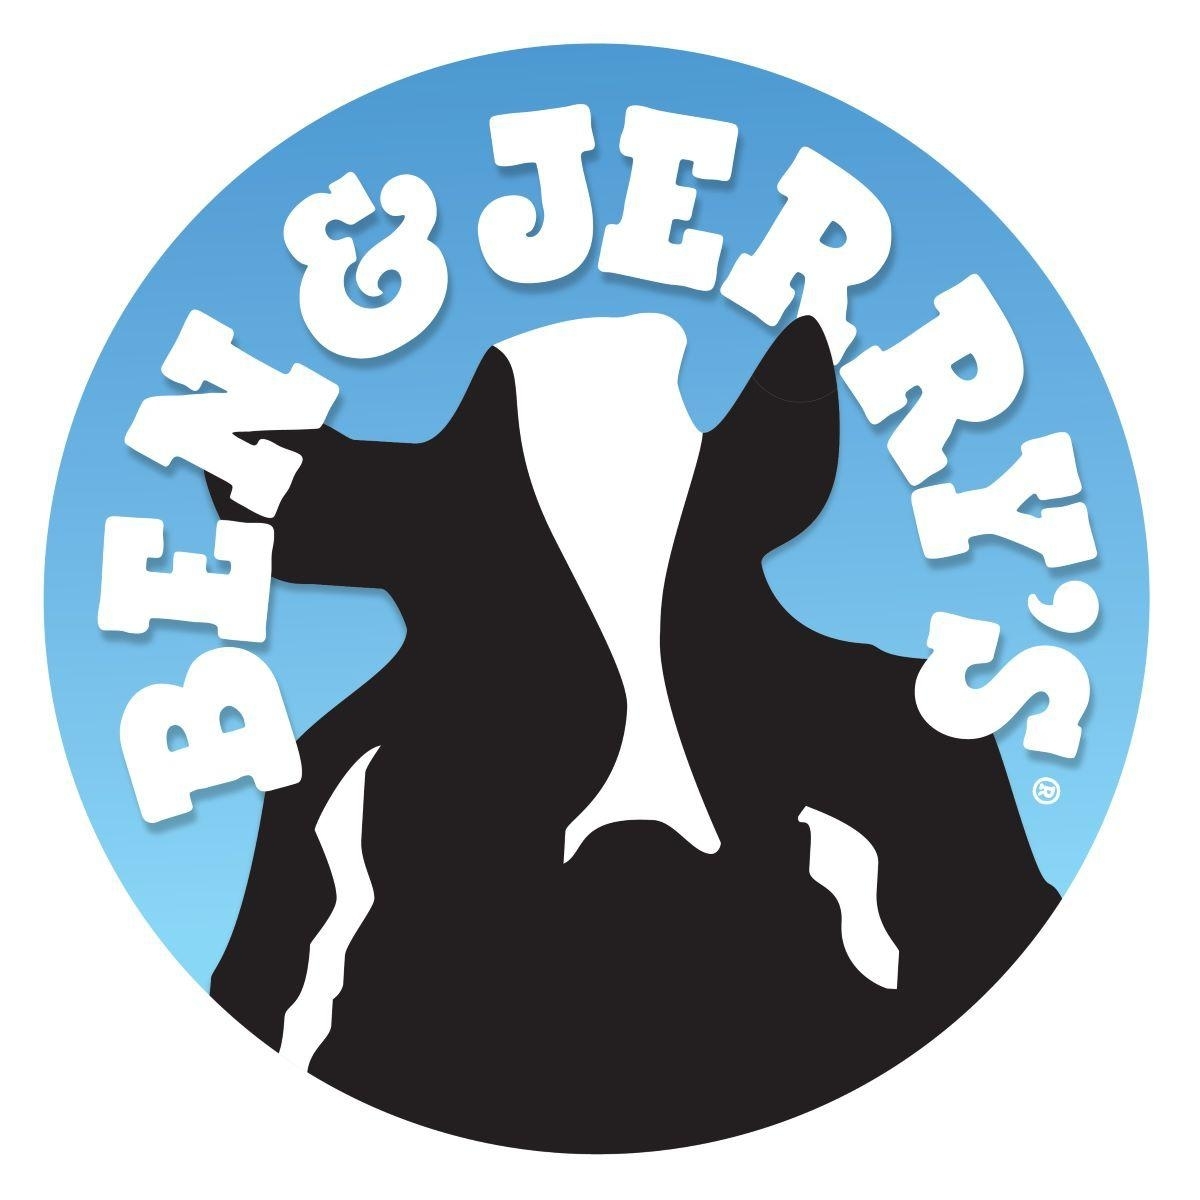 Ben & Jerry’s - Bars laitiers